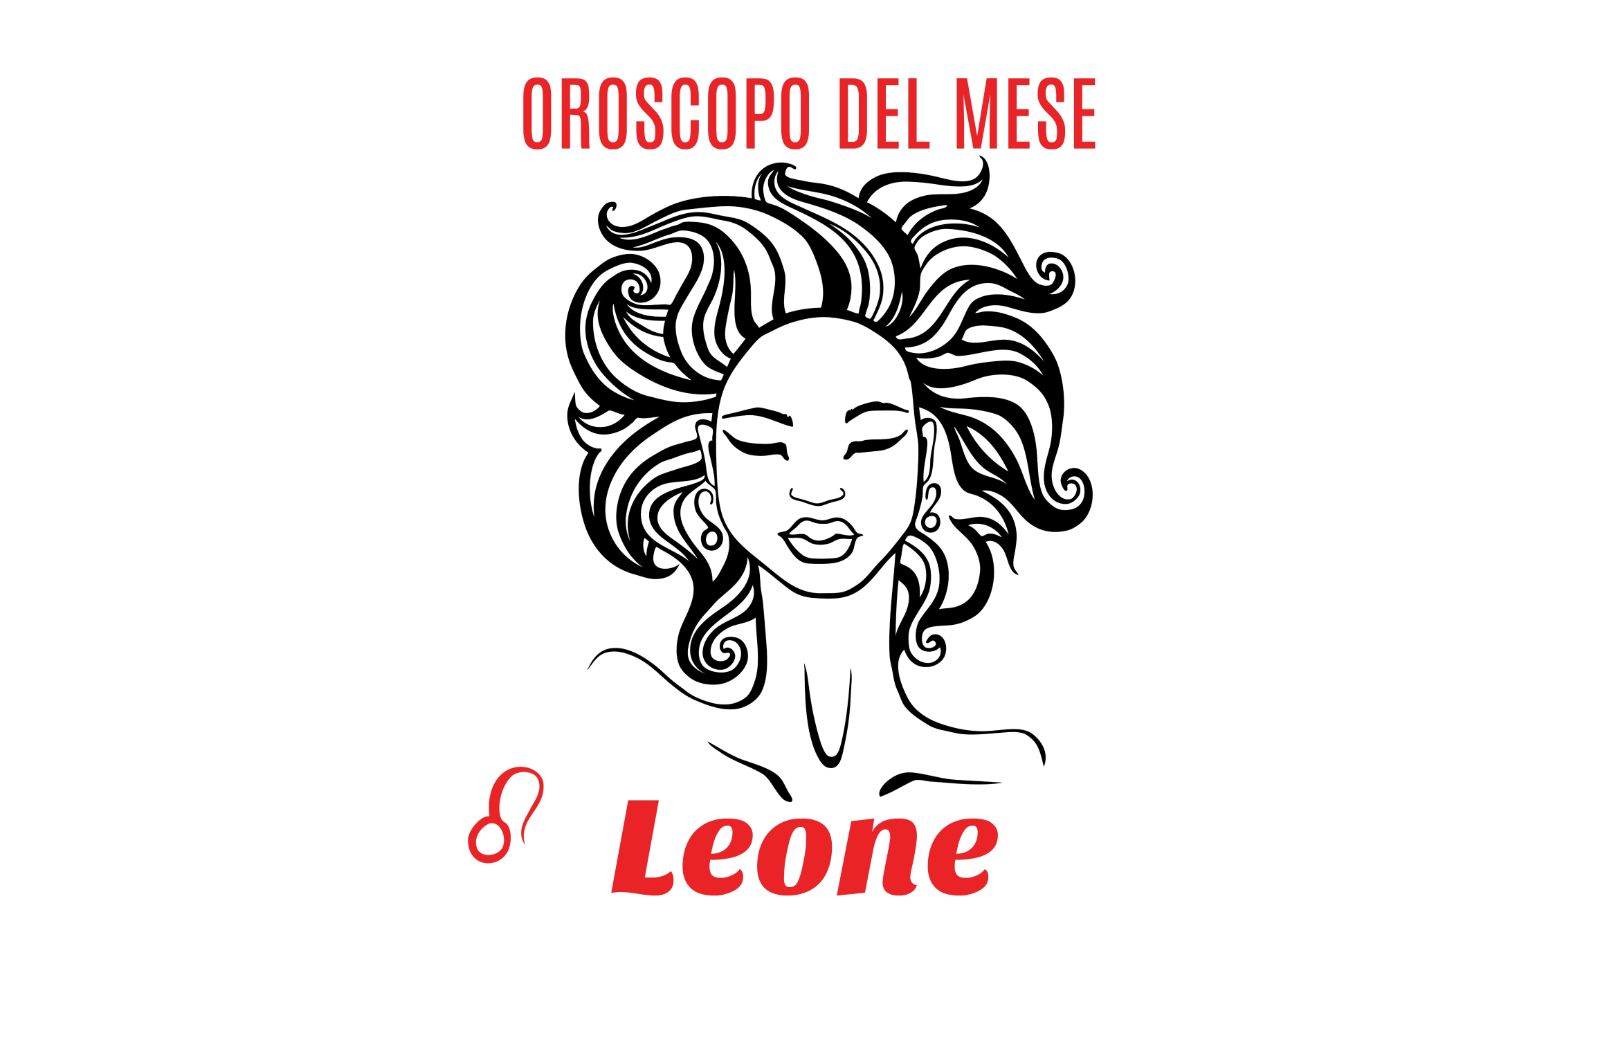 Oroscopo del mese: Leone - agosto 2020